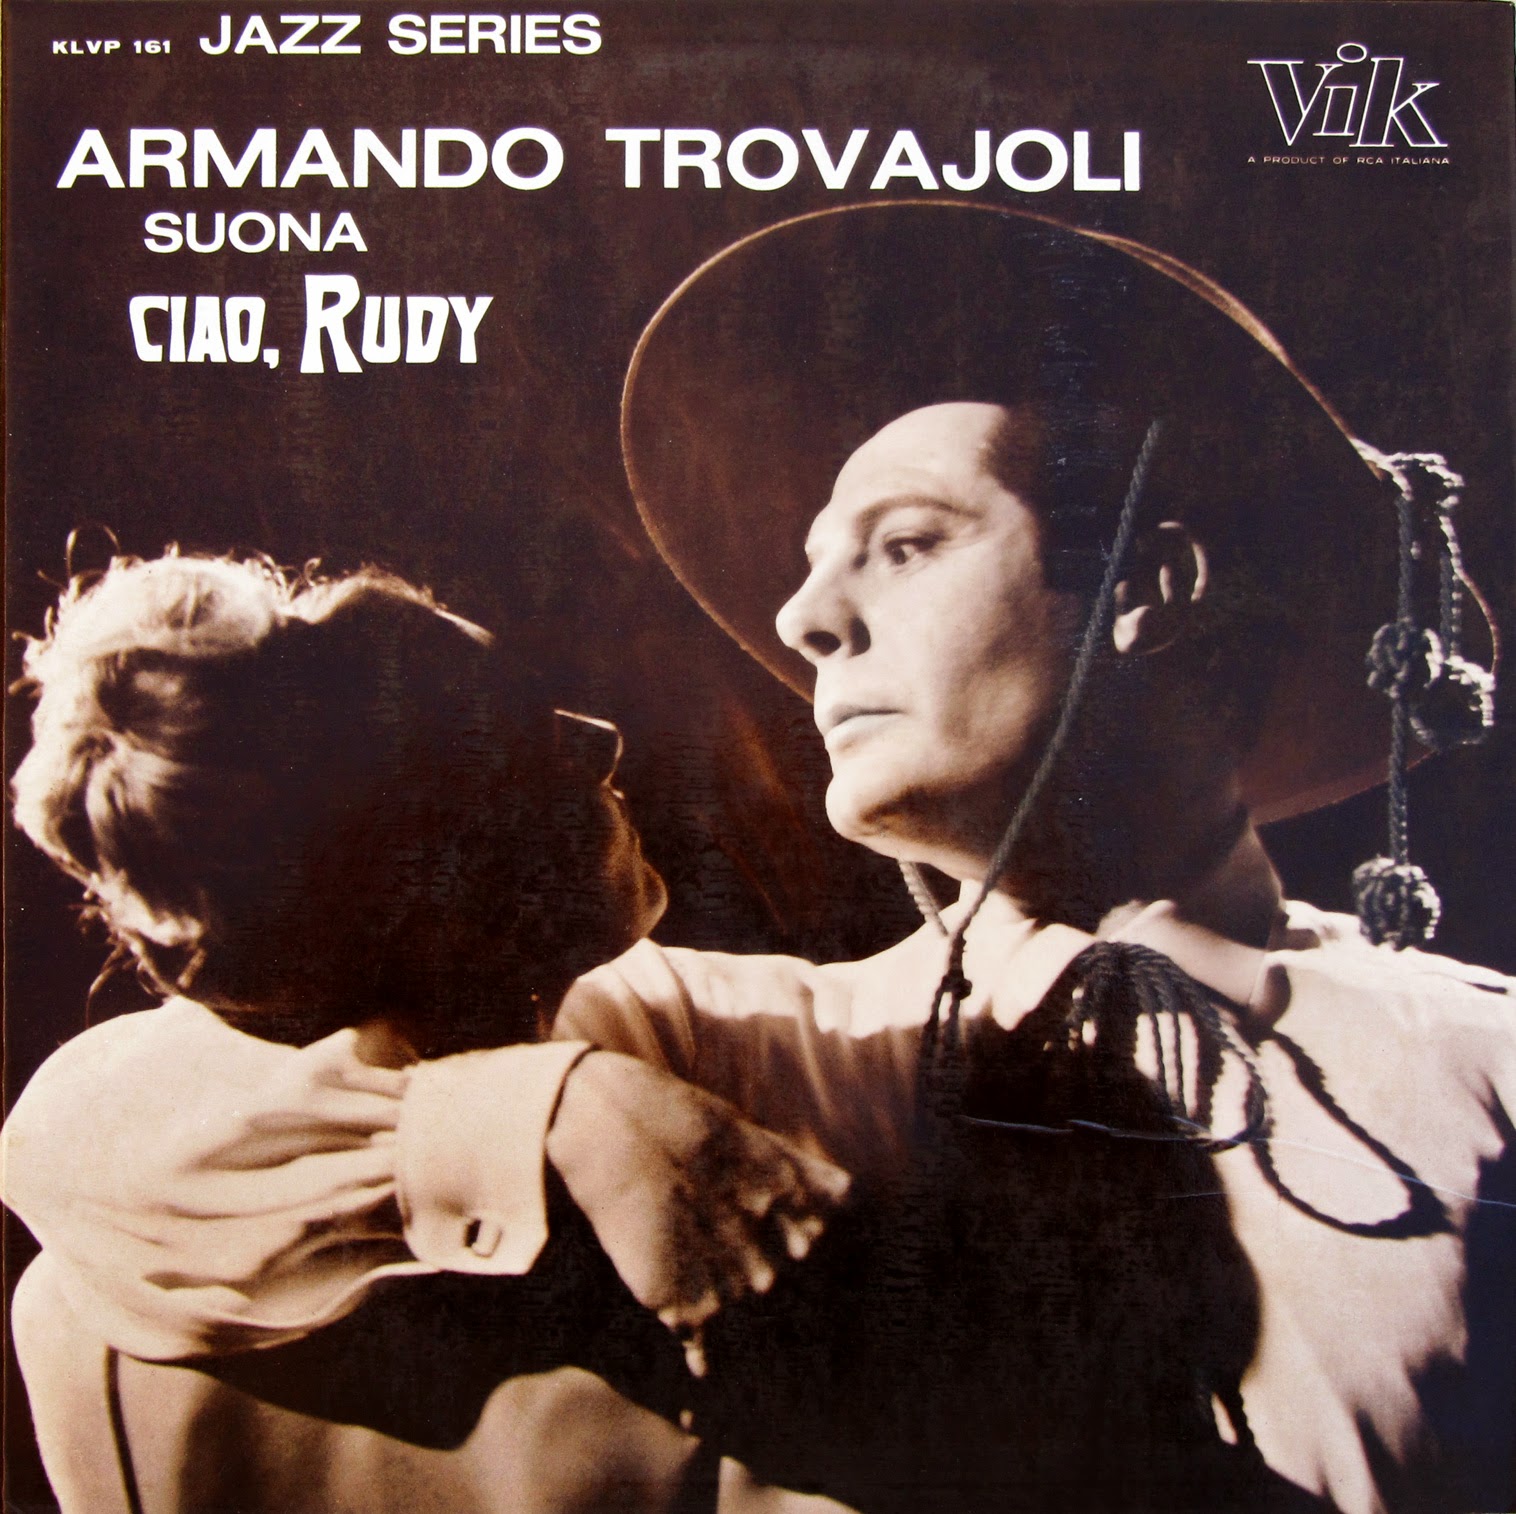 ARMANDO TROVAJOLI - Ciao, Rudy cover 